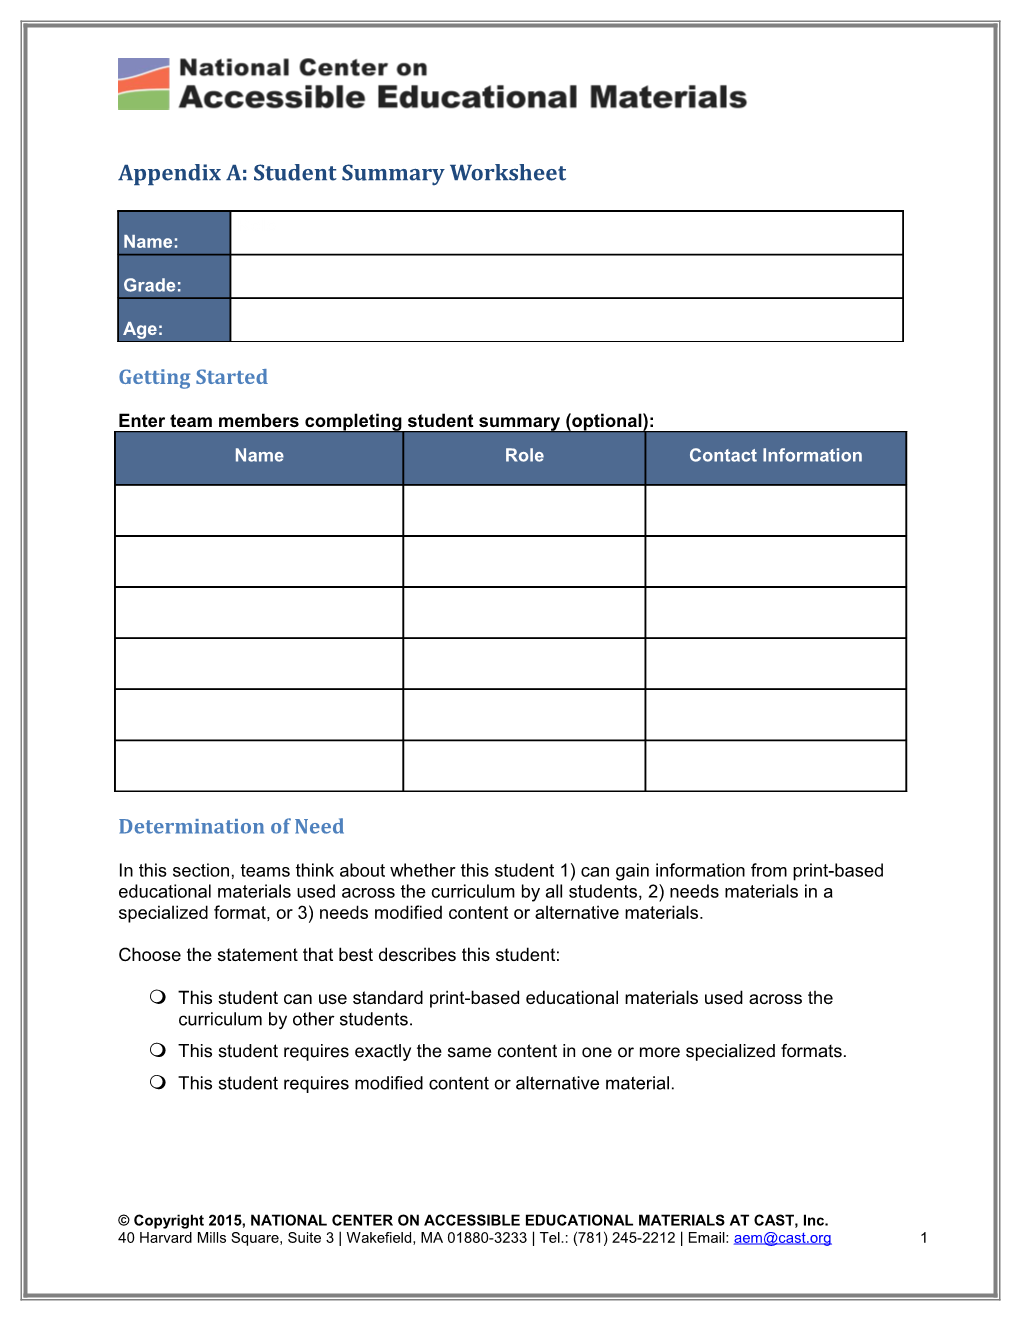 Appendix A: Student Summary Worksheet